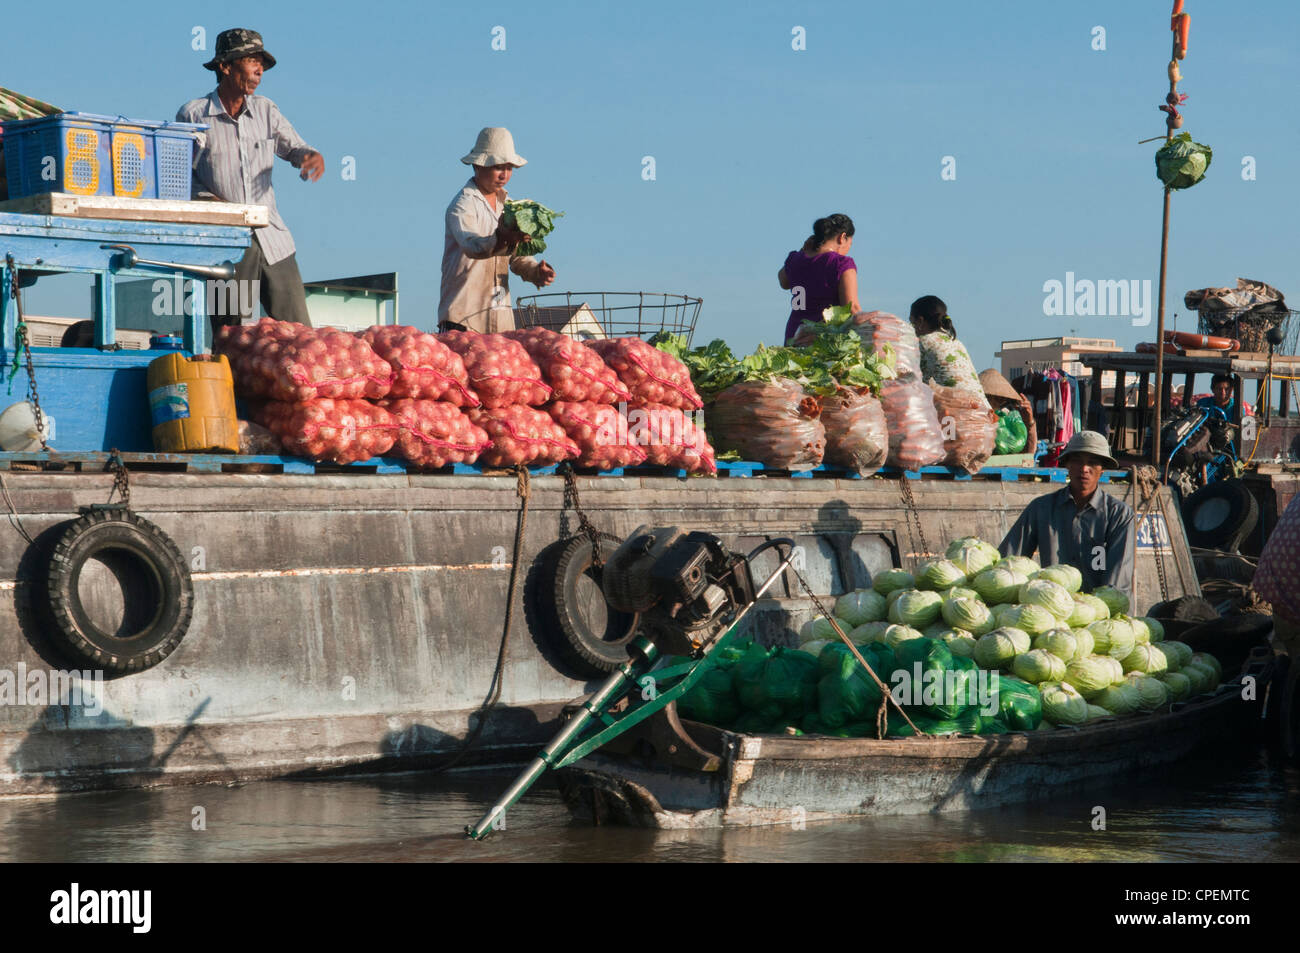 Fruits et légumes sont achetés et vendus à la Marché flottant de Cai Rang dans le Delta du Mékong au Vietnam Banque D'Images